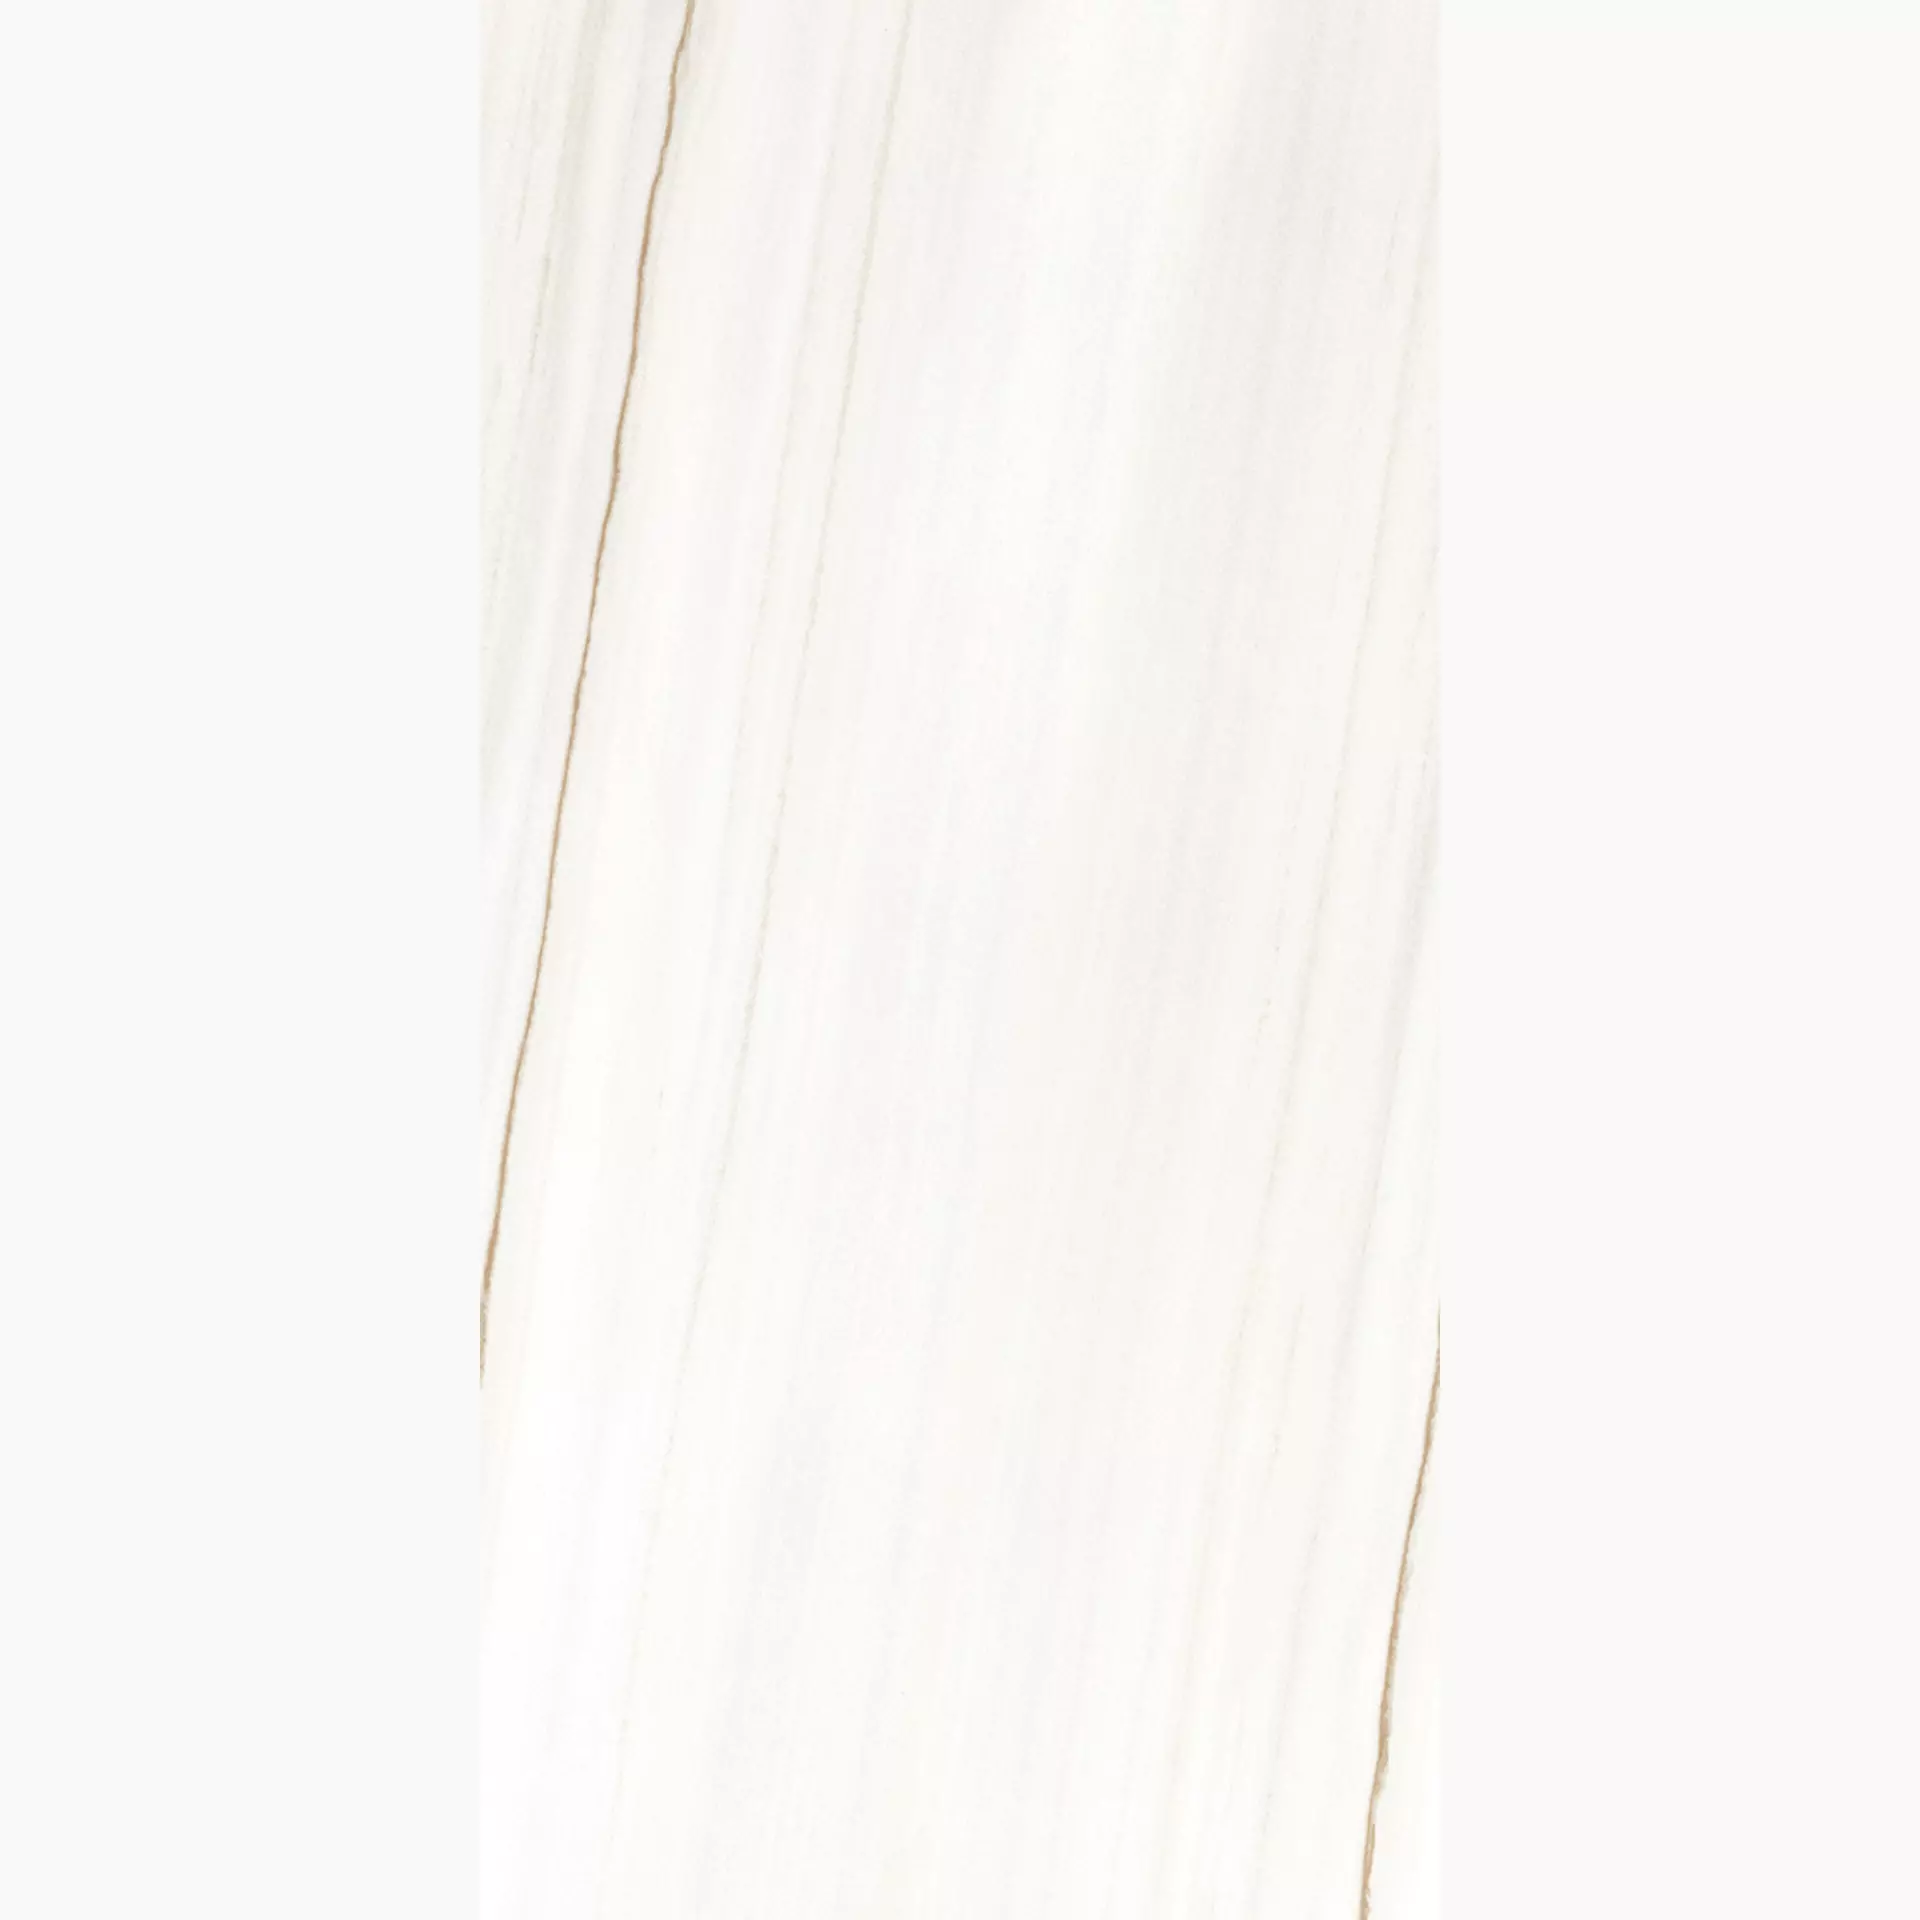 Rondine Canova Lasa White Naturale J88855 60x120cm rektifiziert 8,5mm